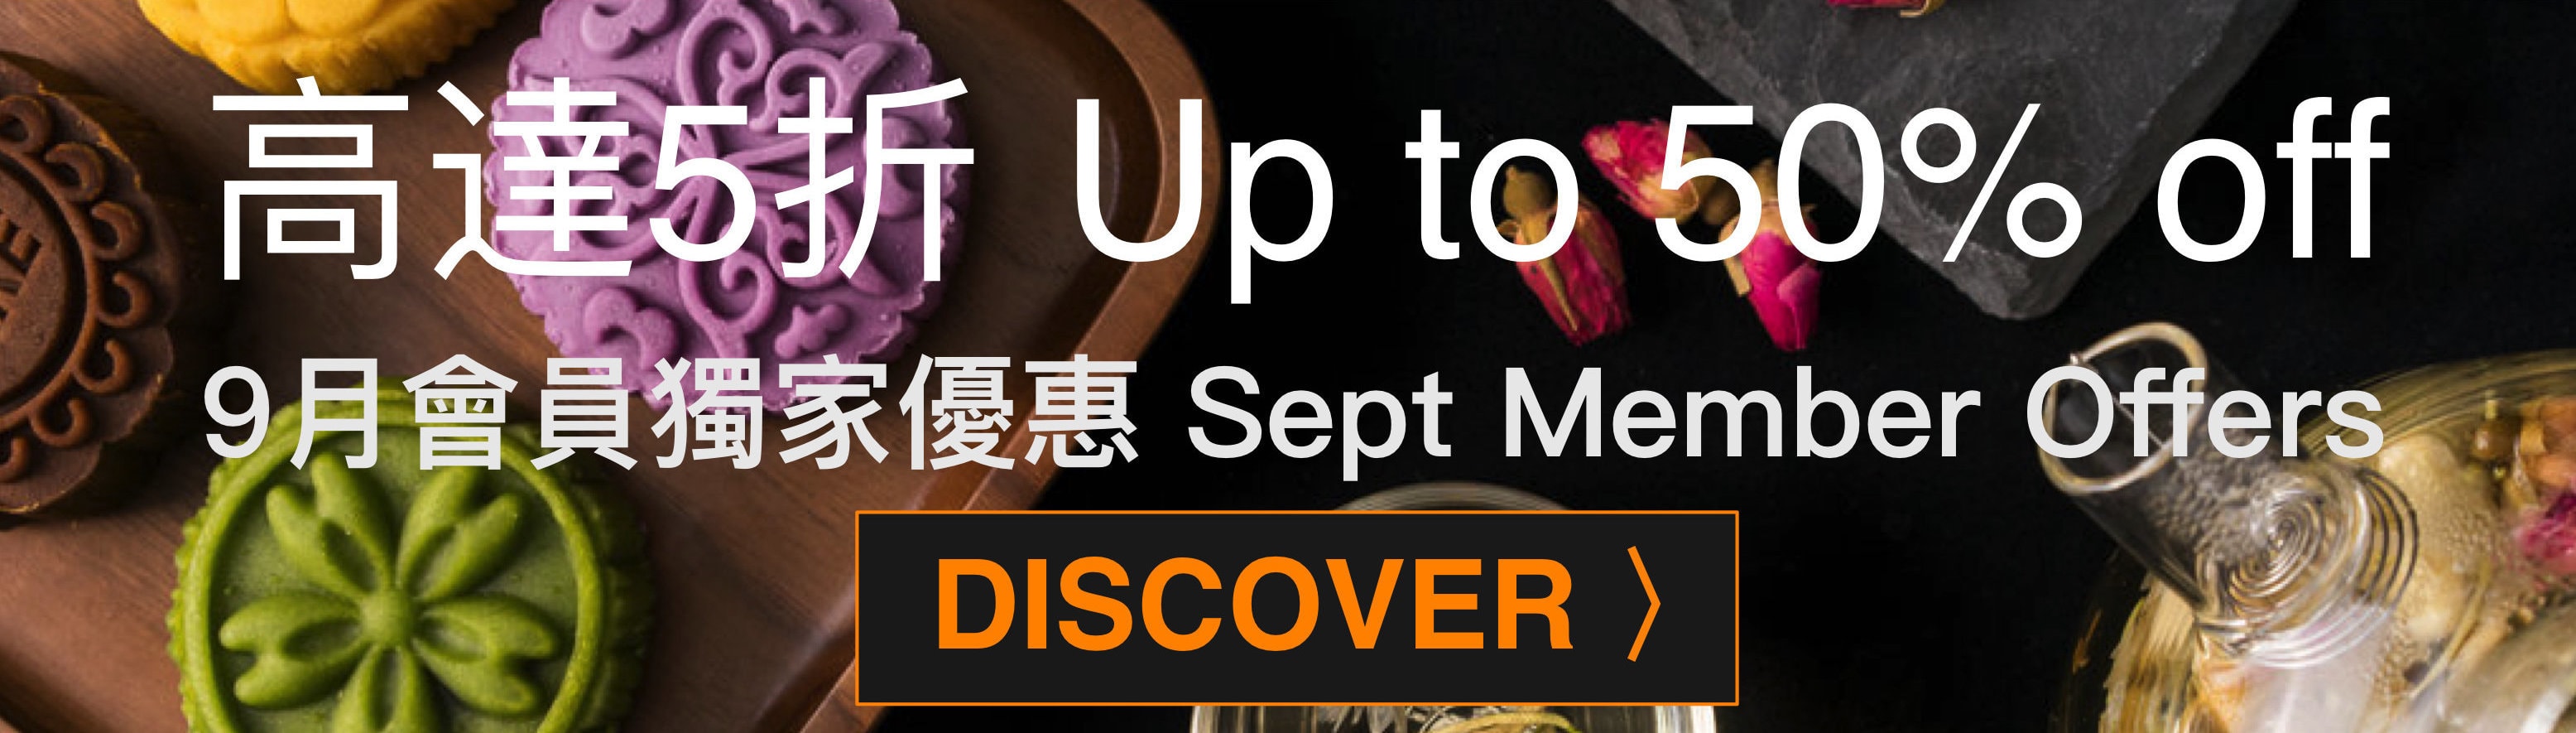 September Members Dining Offers 9月會員獨家優惠 - OKiBook Hong Kong Restaurant Buffet booking 自助餐預訂香港